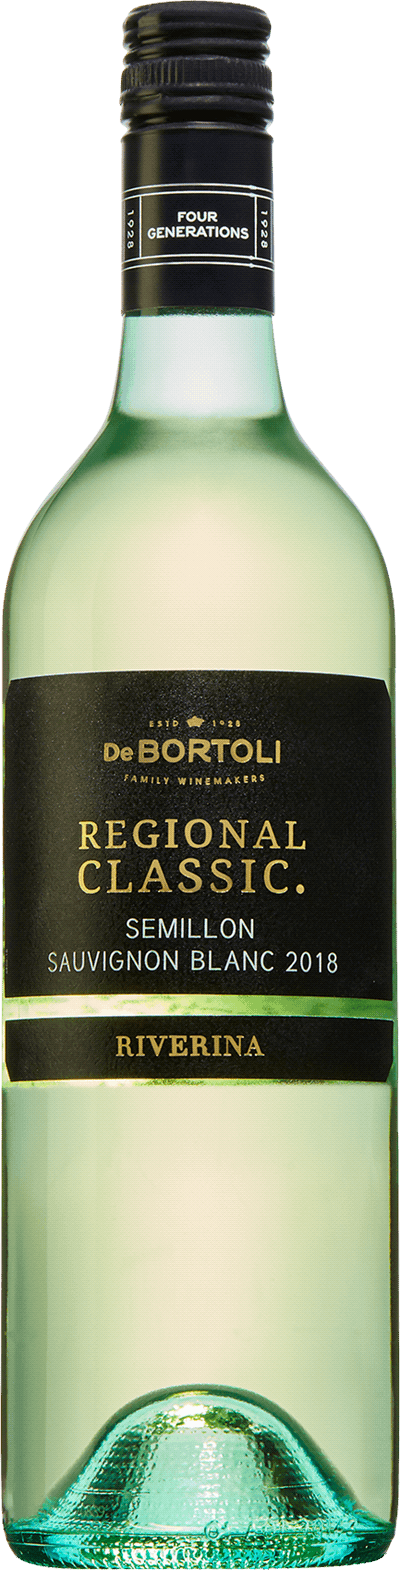 Regional Classic Semillon Sauvignon Blanc, 2018